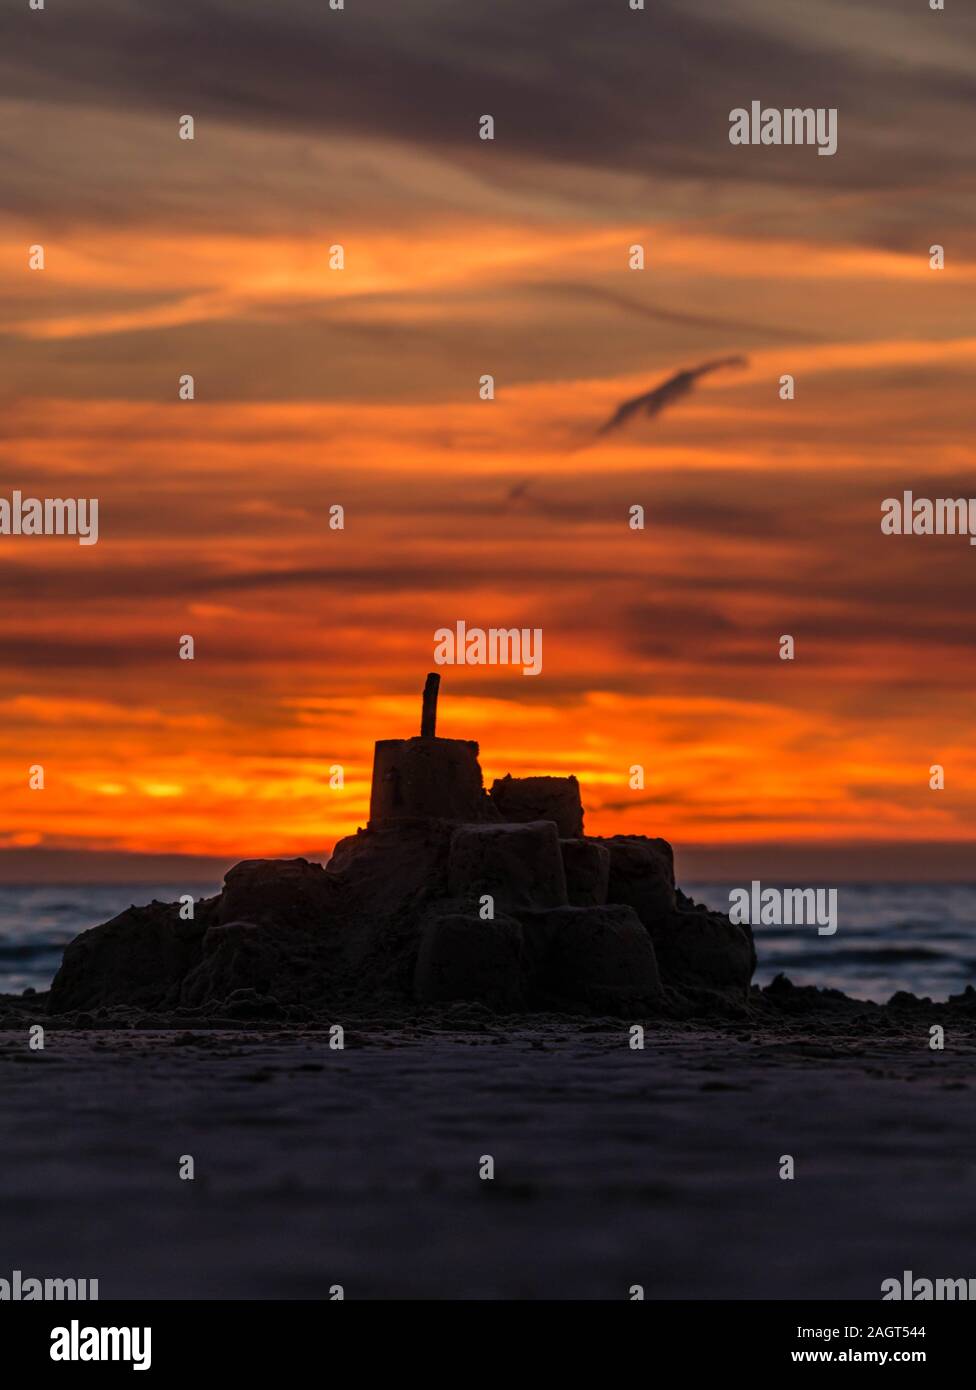 Coucher de soleil coloré dans l'océan derrière la silhouette d'un château de sable sur une plage dans le nord de la France Banque D'Images